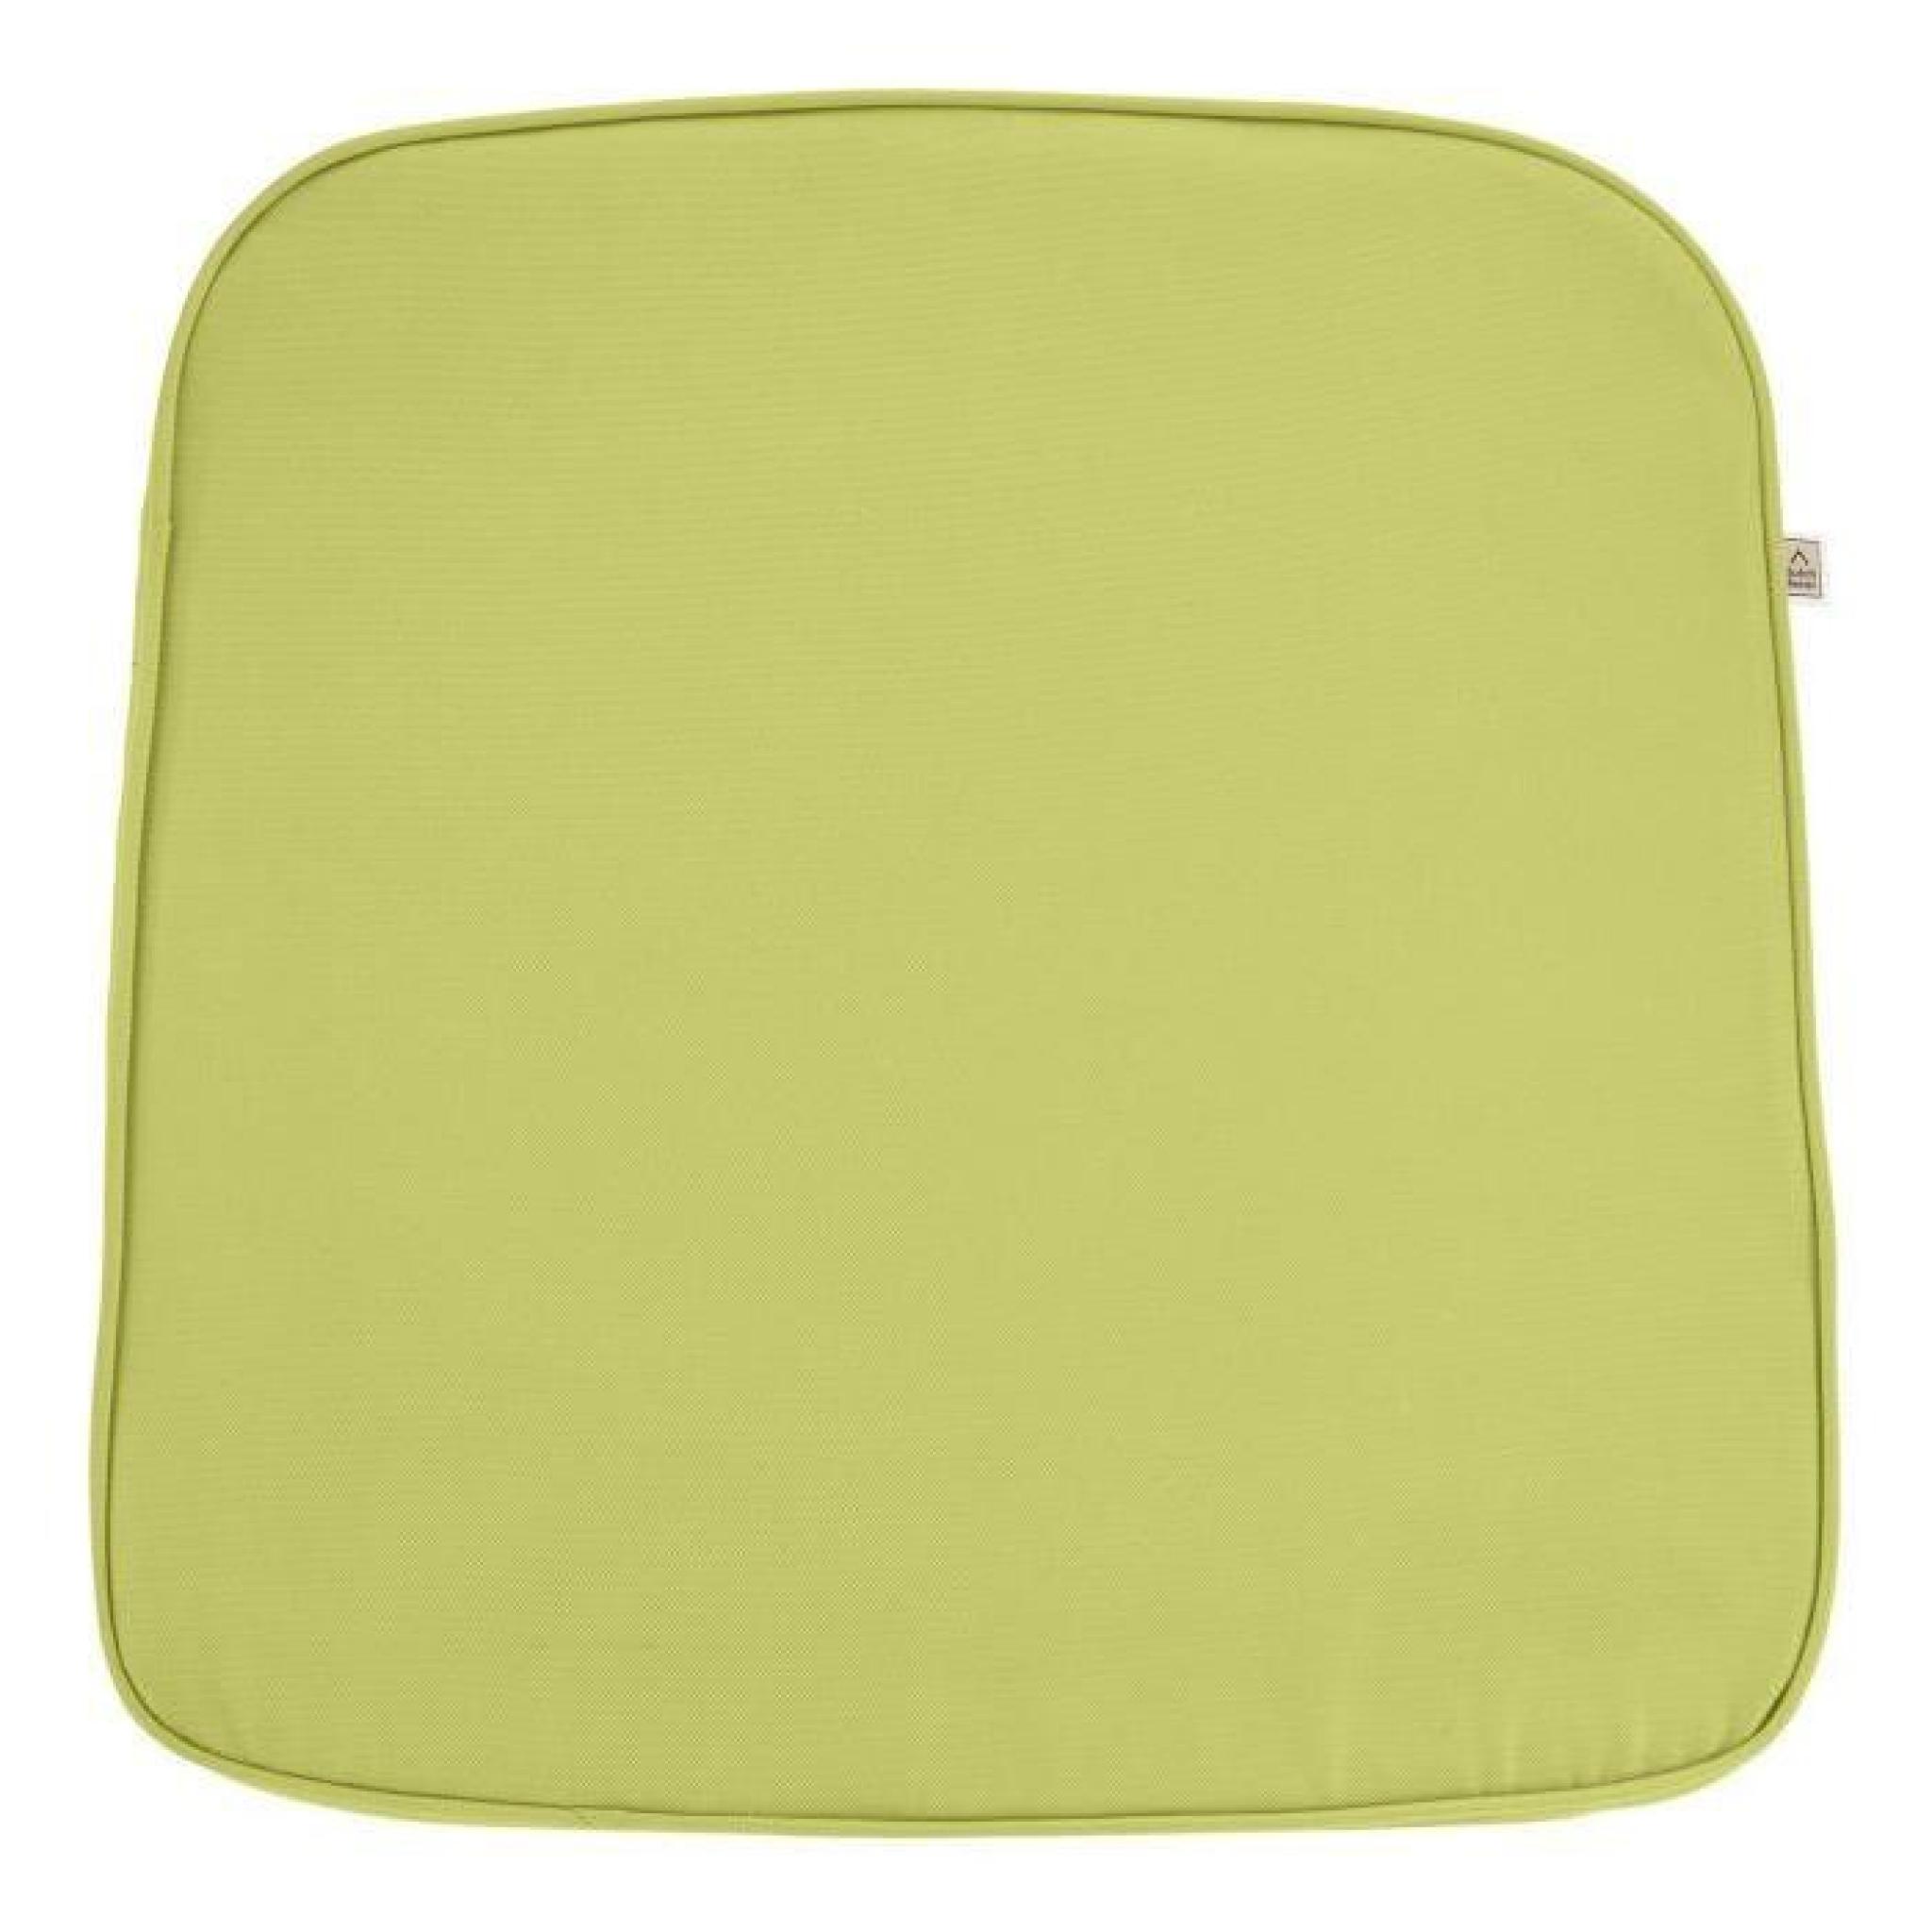 Galette de chaise Sunny PK2 44x46x5 cm citron-vert pas cher